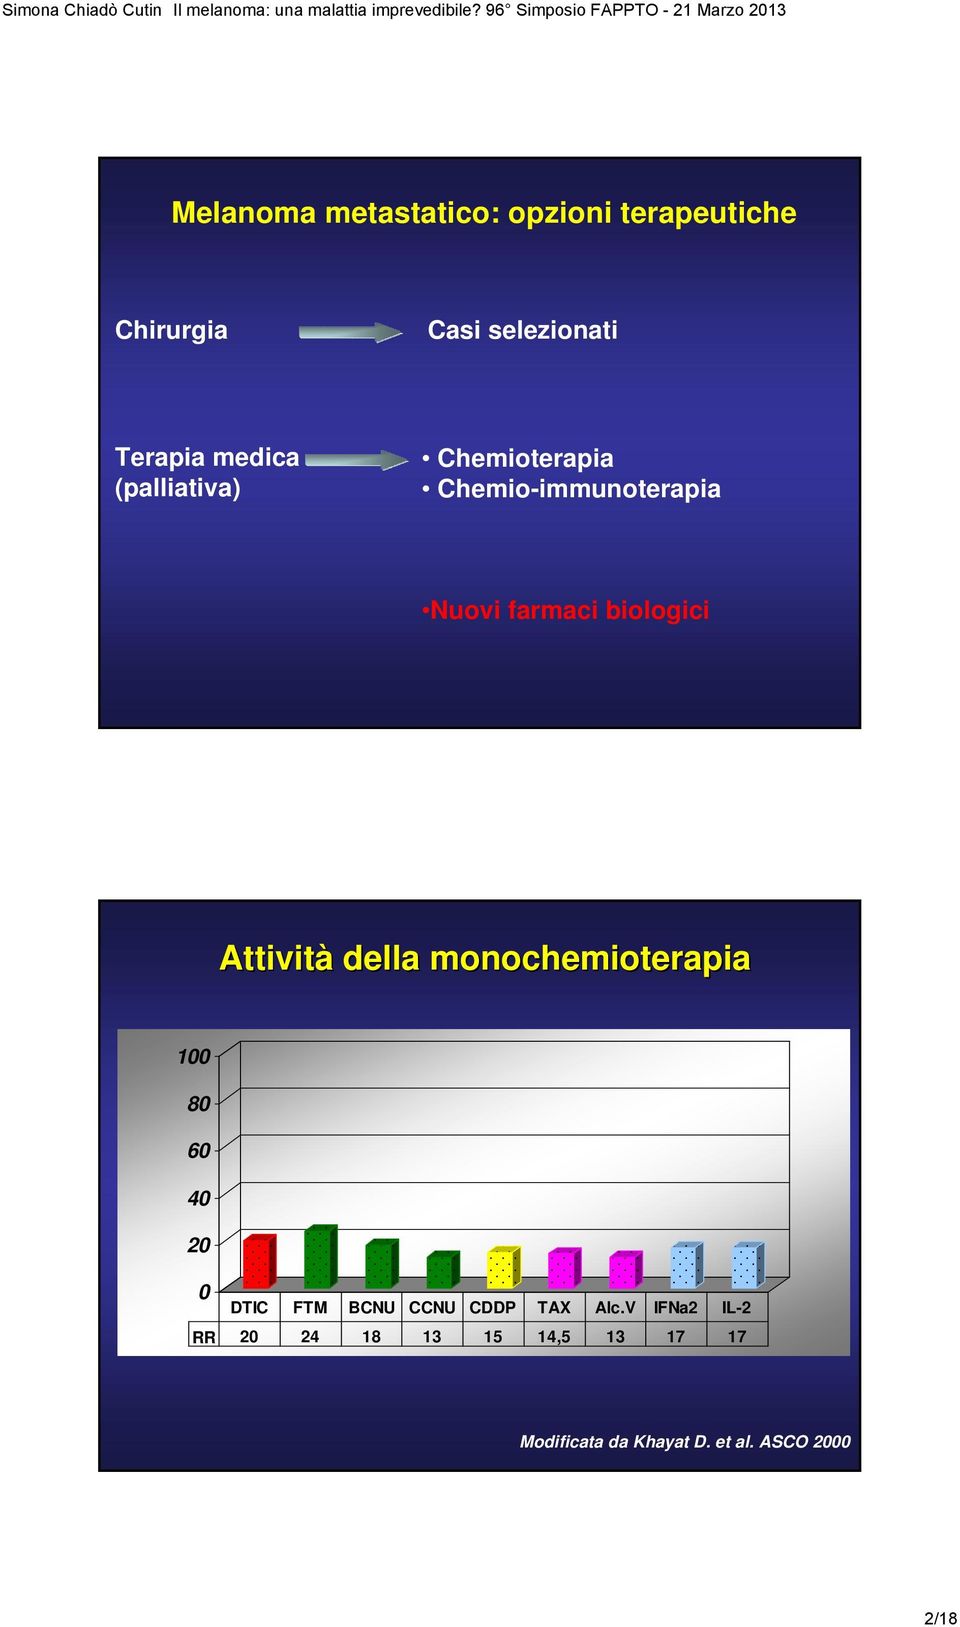 Attività della monochemioterapia 100 80 60 40 20 0 DTIC FTM BCNU CCNU CDDP TAX Alc.